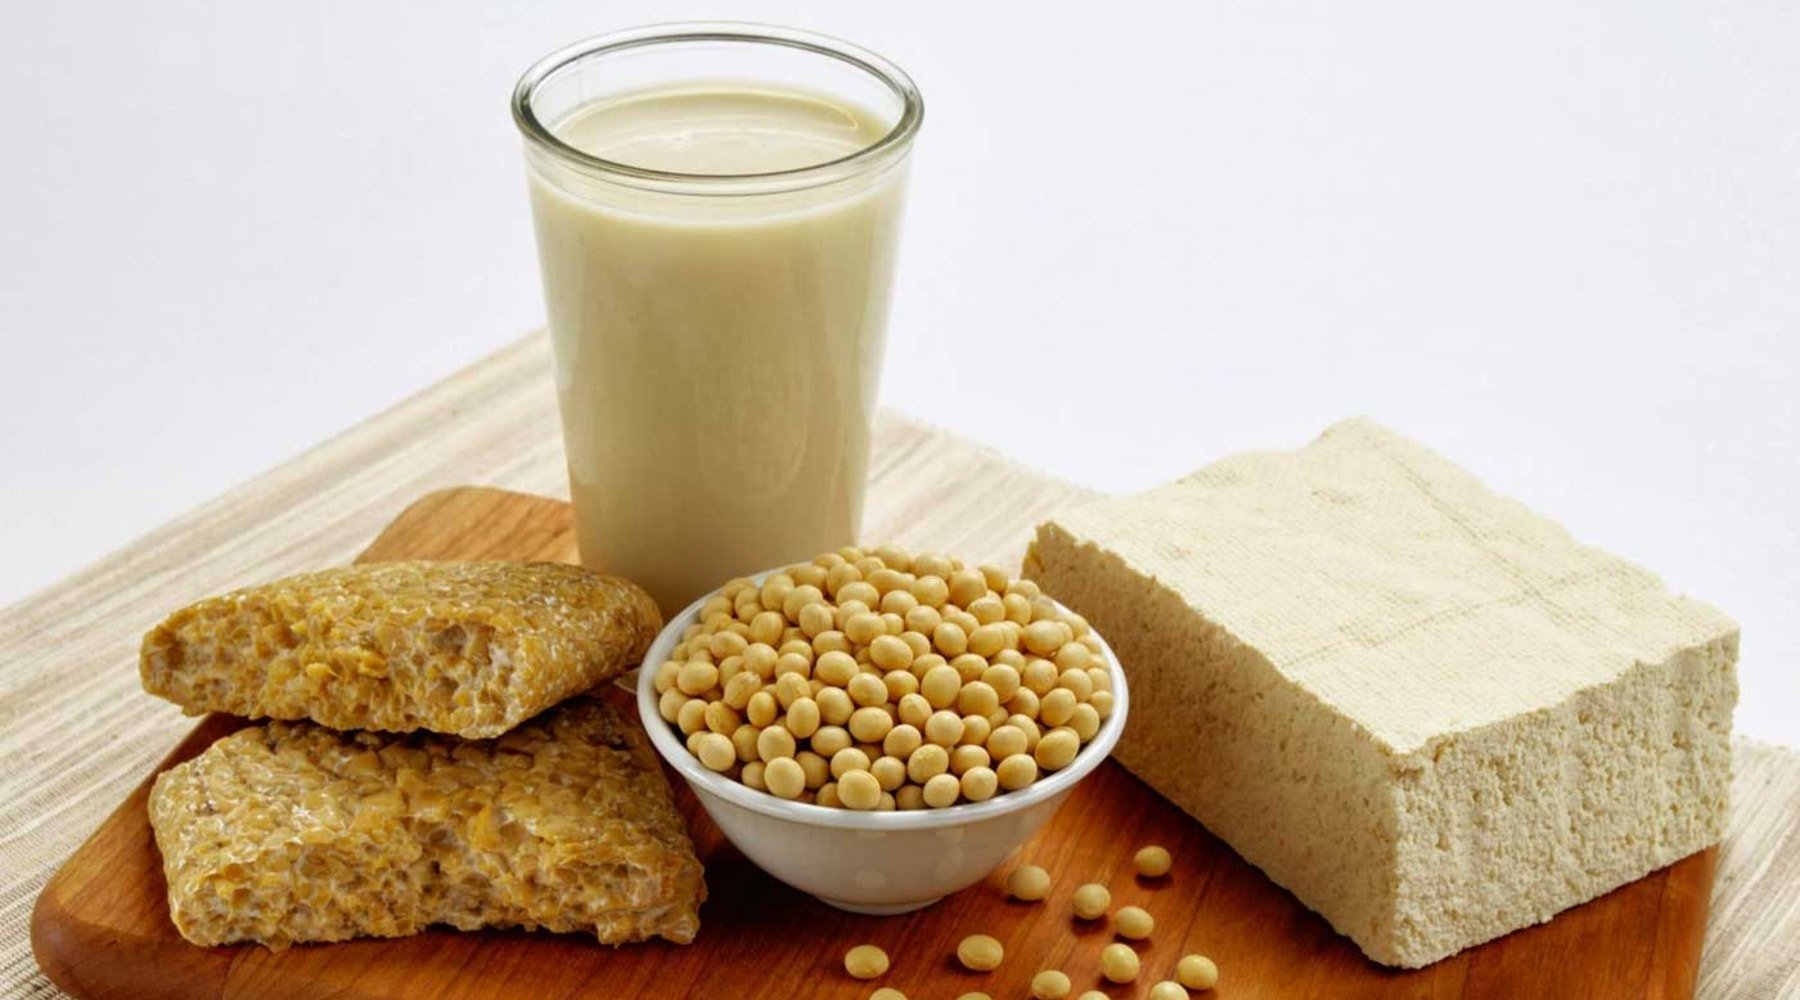 大豆蛋白是什么 – 大豆蛋白的功效与作用